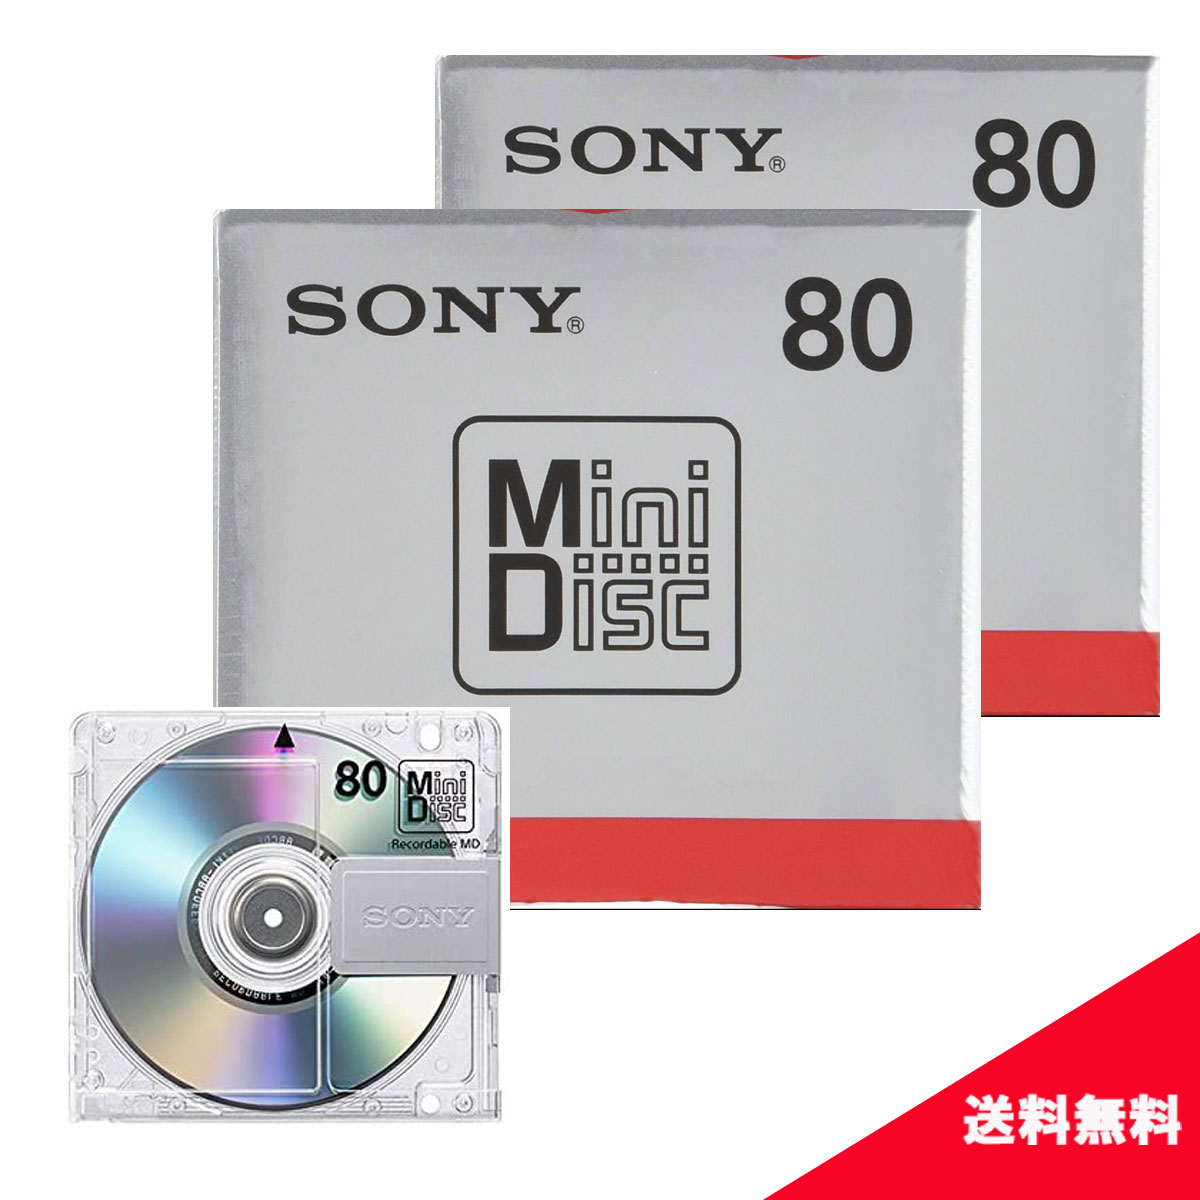 ( 送料無料 ) ソニー ミニディスク 80分 1枚パック MDW80T 【 2個セット 】 SON ...